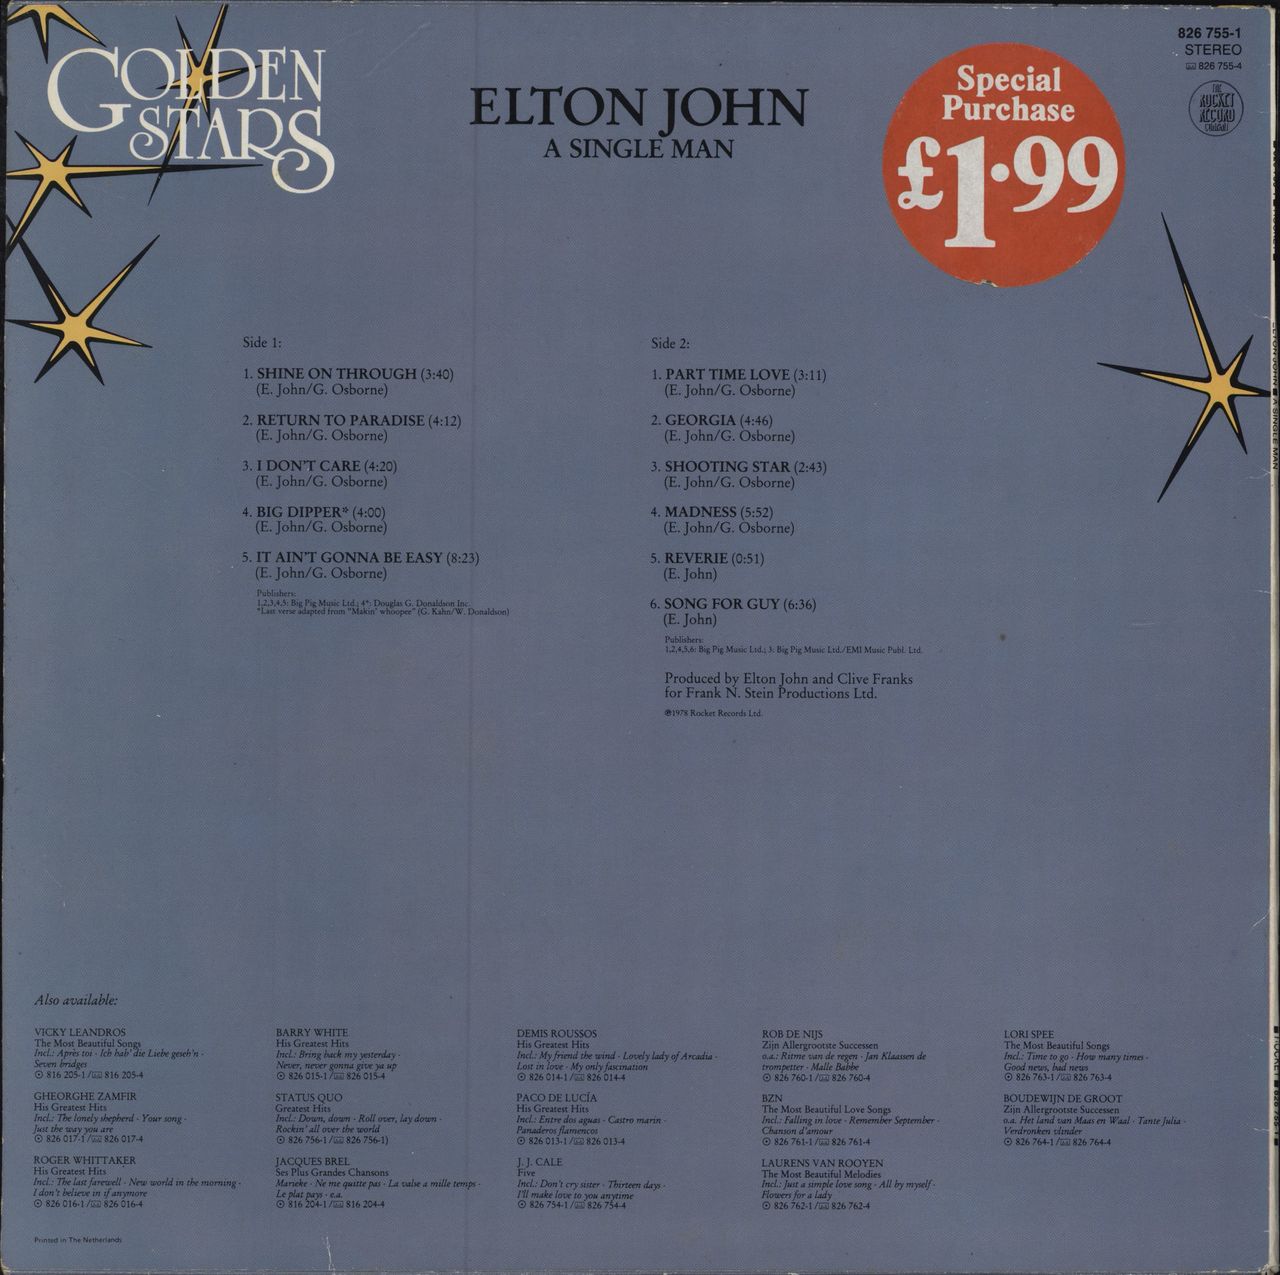 Elton John - The Big Picture [Vinyl]